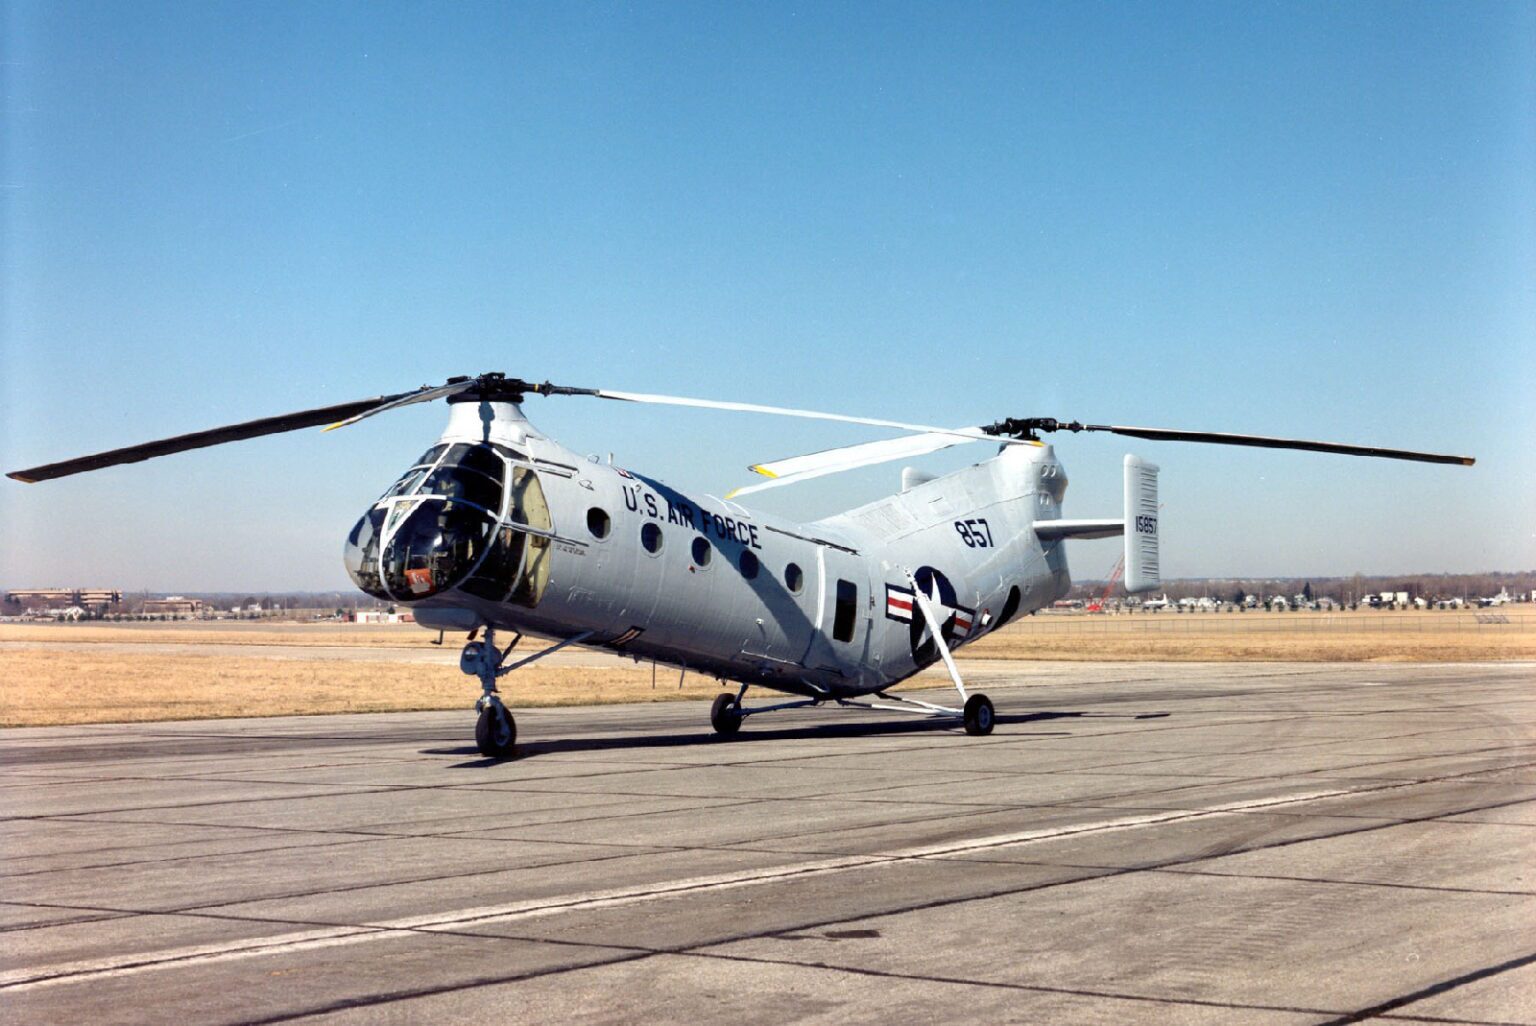 1704920087 174 عجیب ترین هلیکوپترهای نظامی که تاکنون ساخته شده اند؛ از